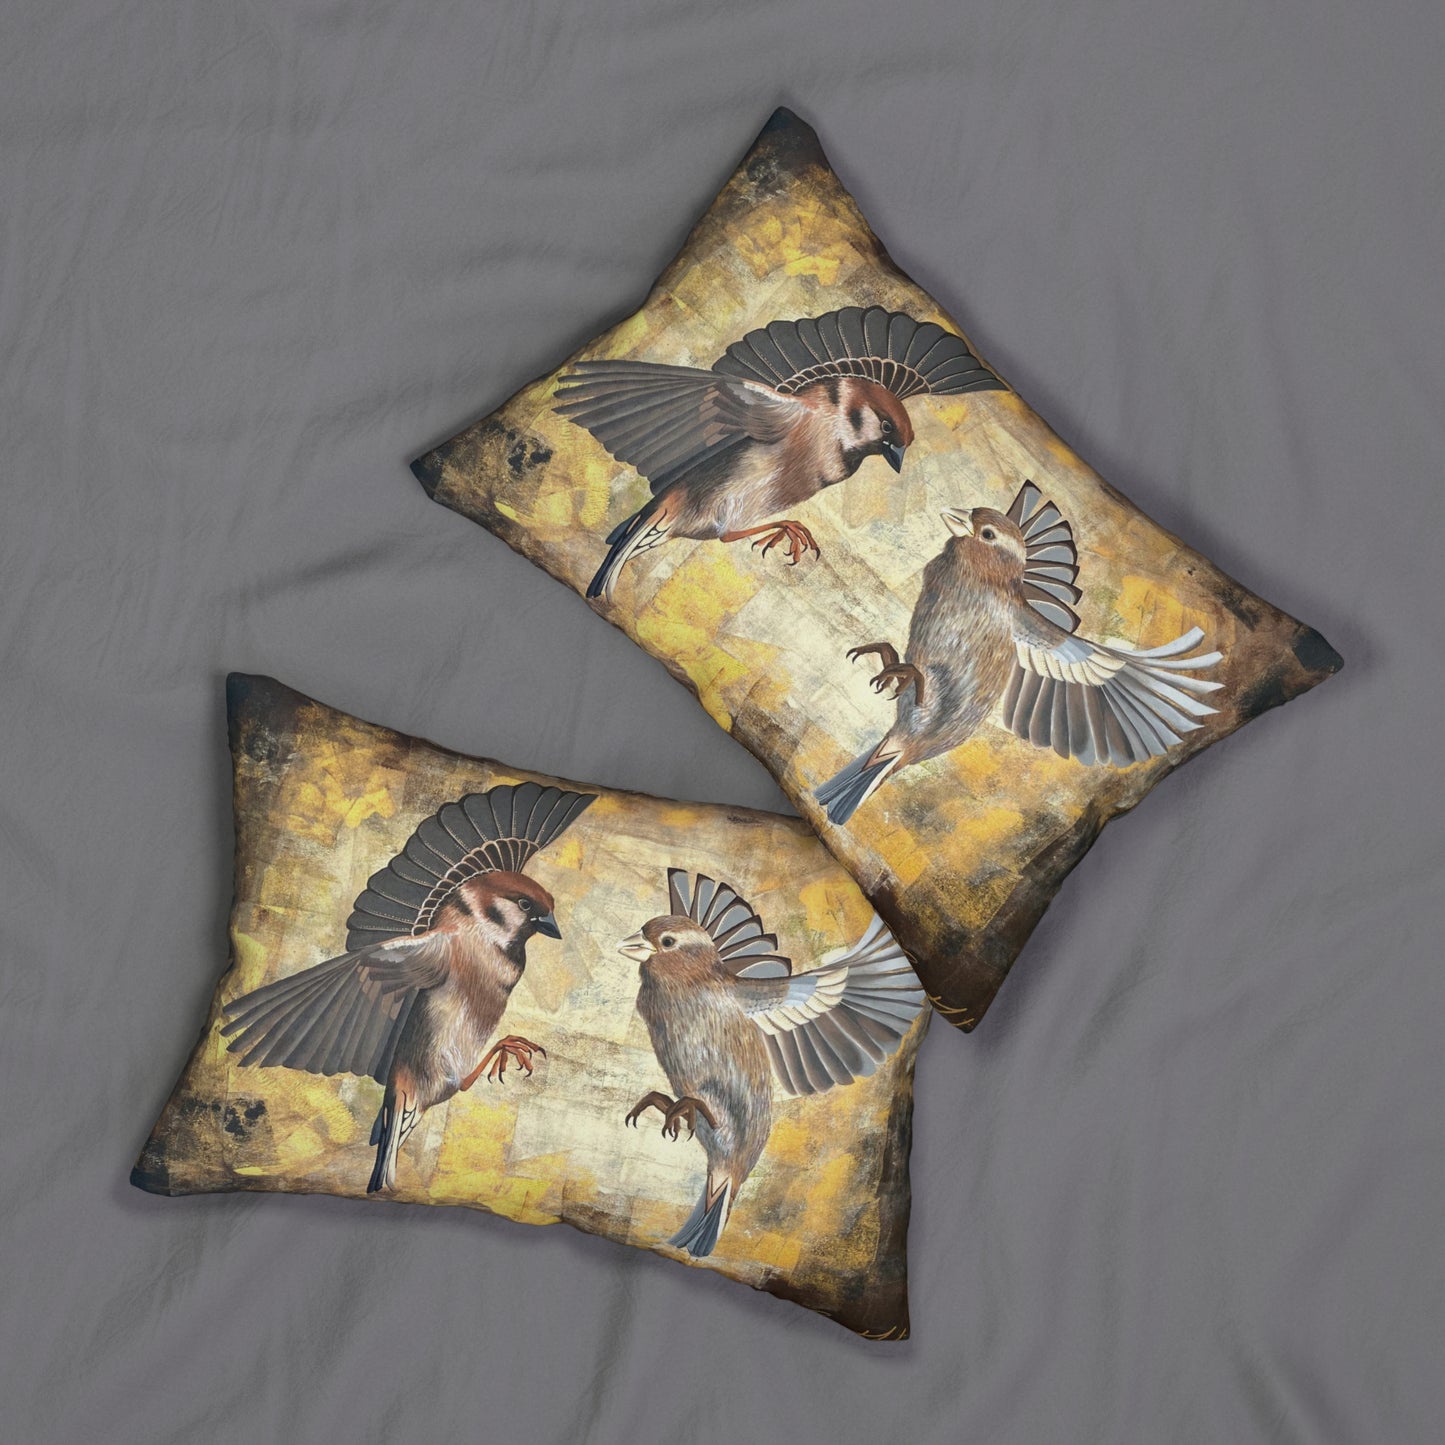 Sparrow Bird Pillow